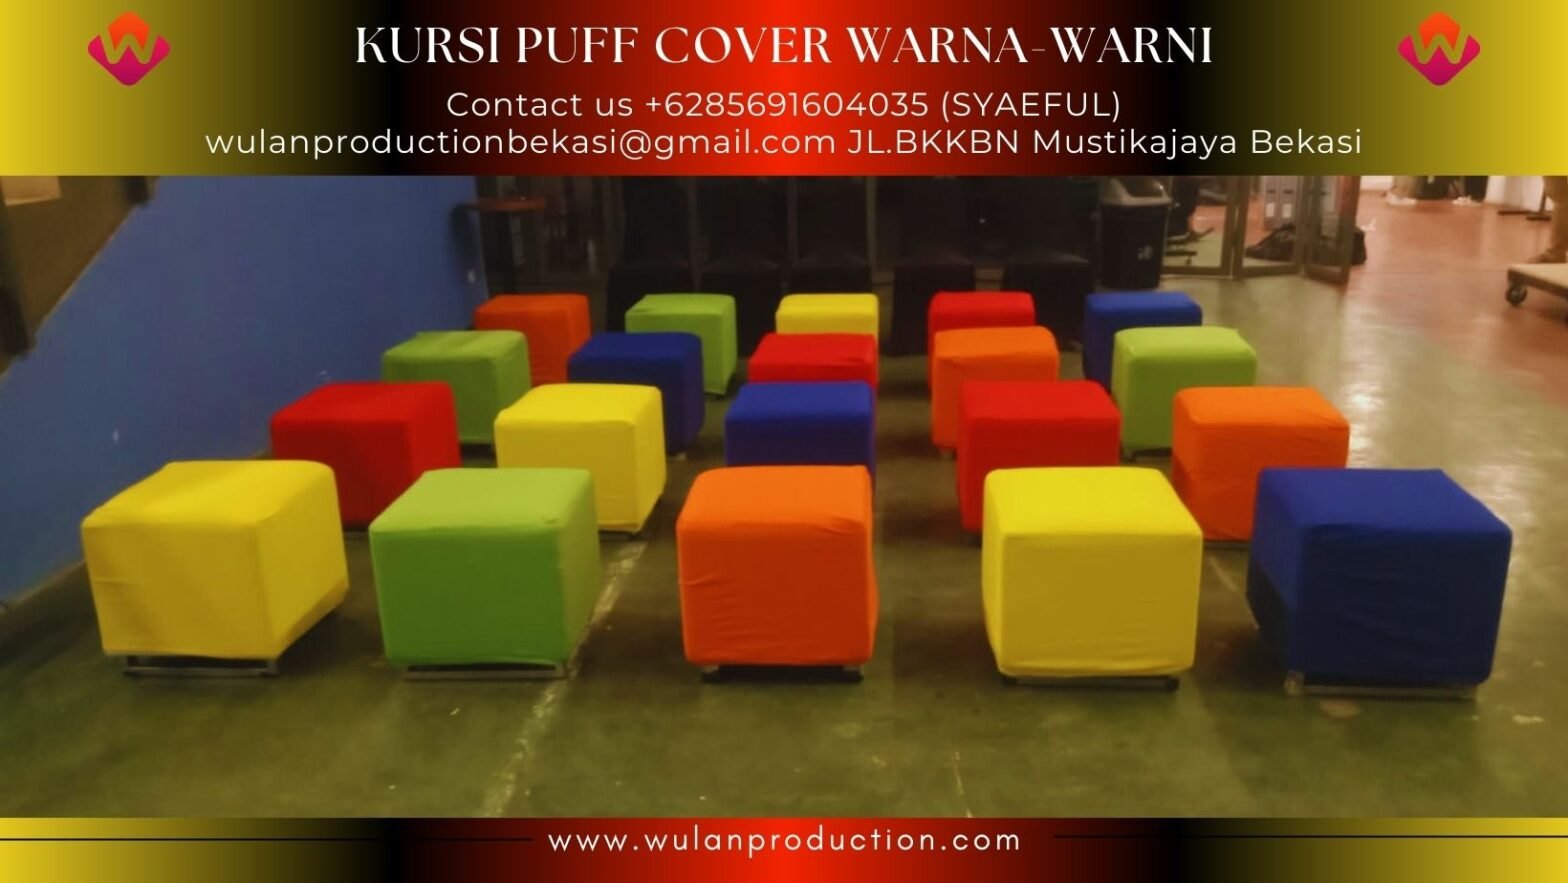 Sewa Puff Kursi Kotak Cover Warna-Warni Jakarta Bogor